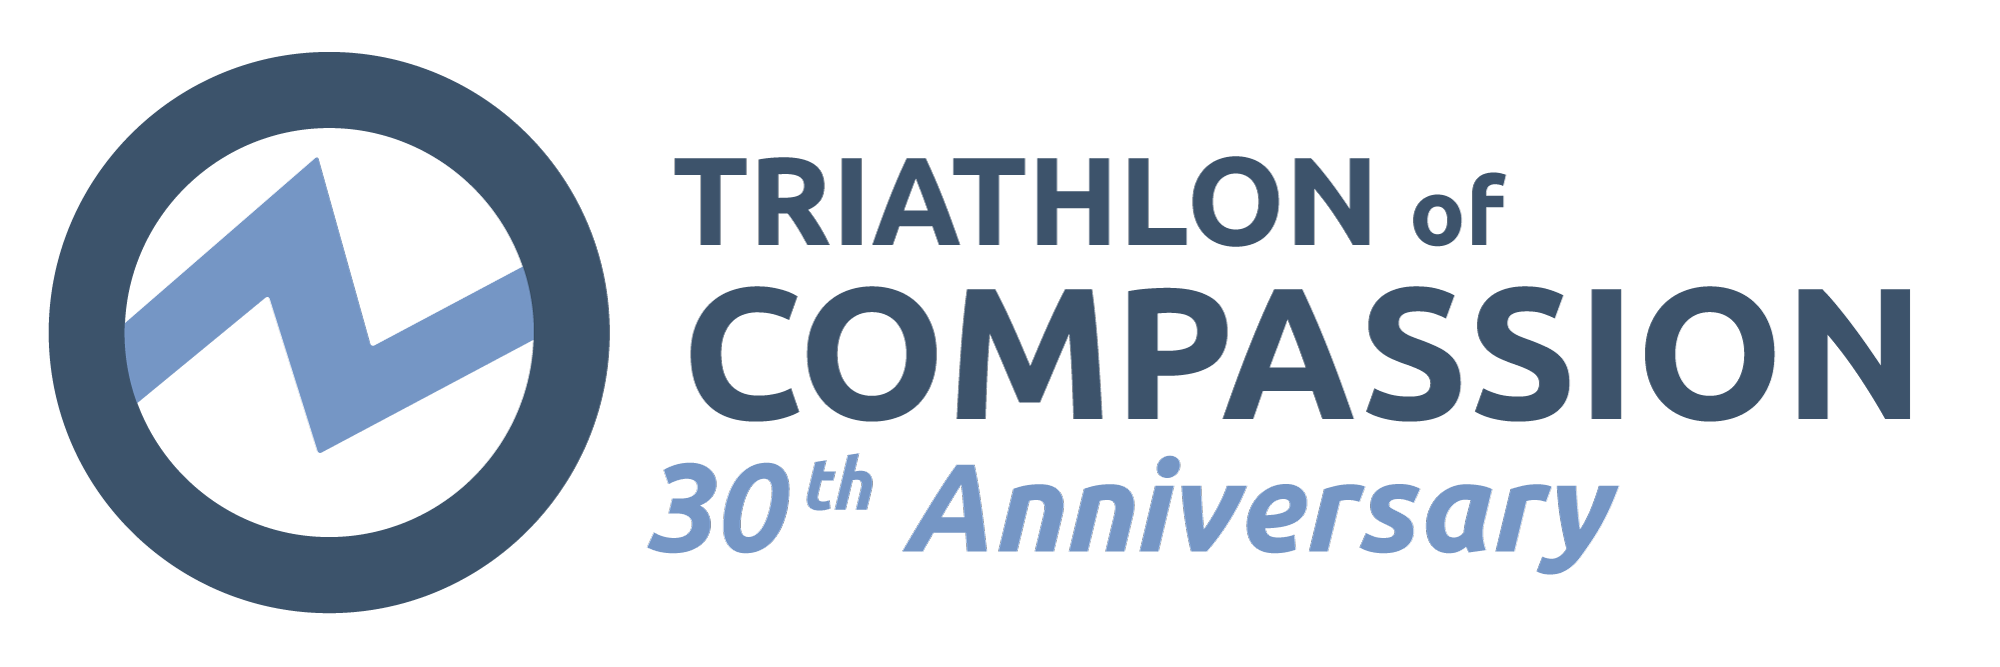 Triathlon of Compassion, 30th Anniversary.